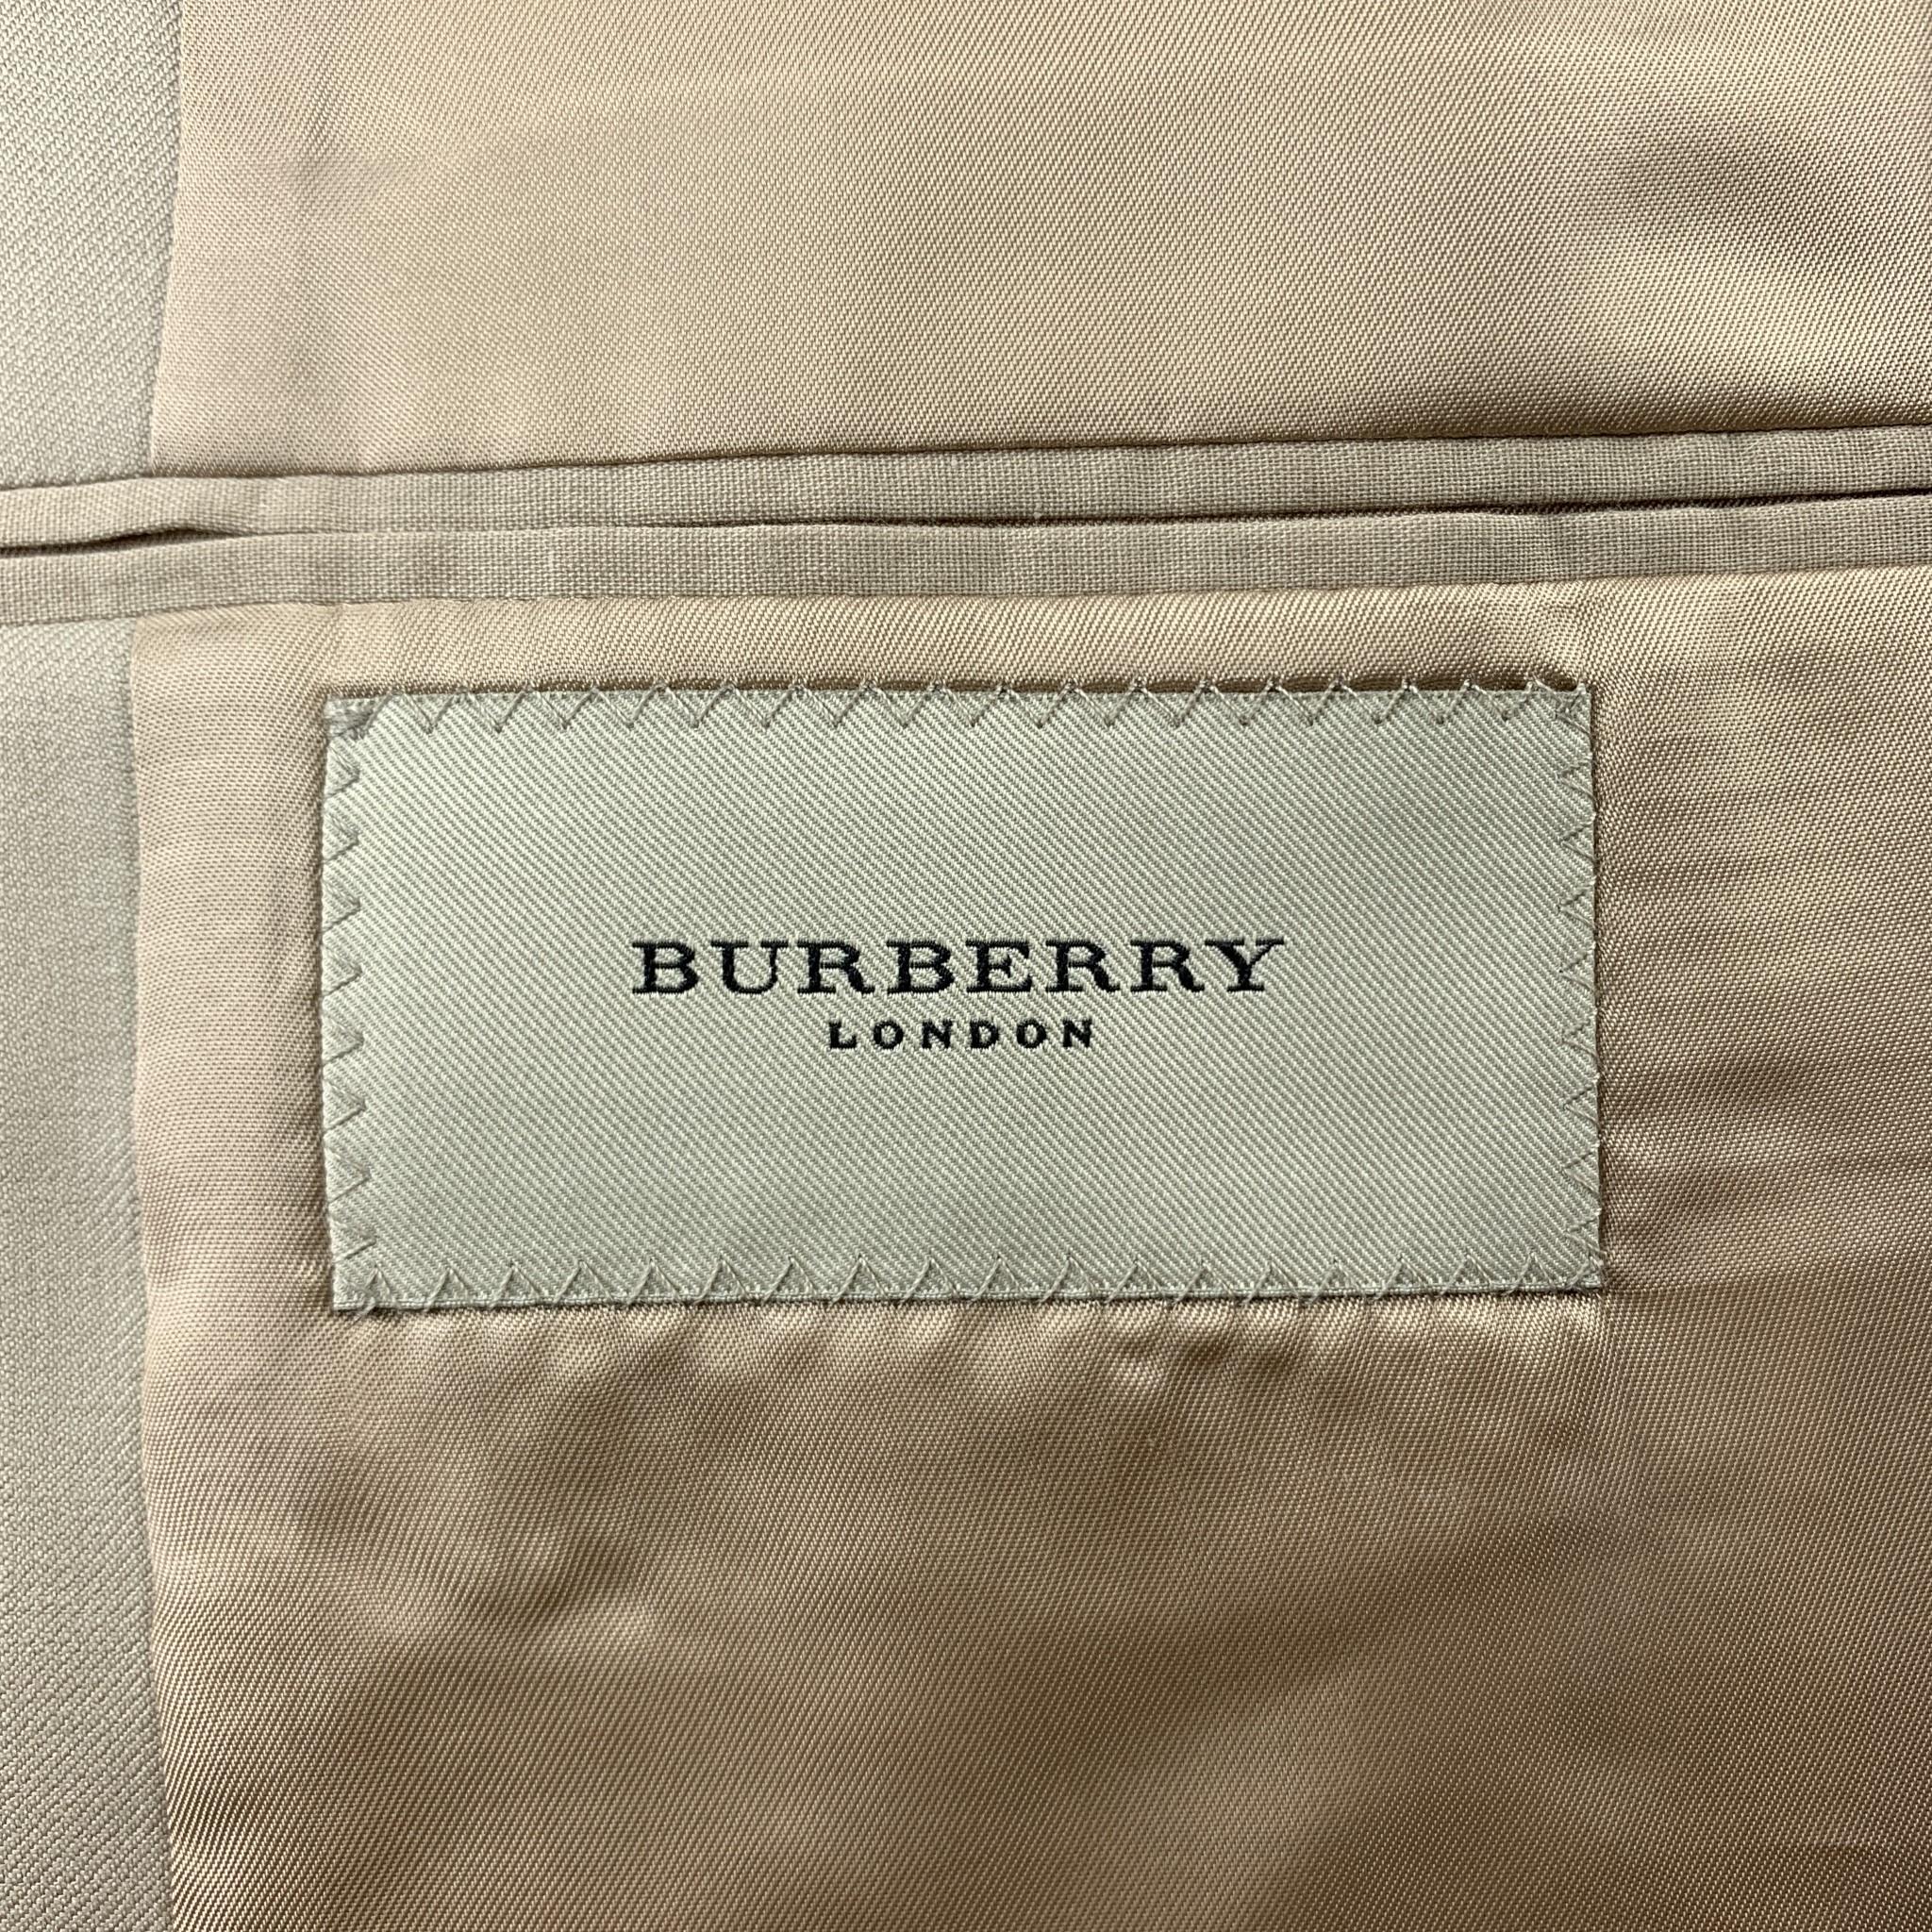 Men's BURBERRY LONDON Size 36 Solid Tan Wool Notch Lapel Suit